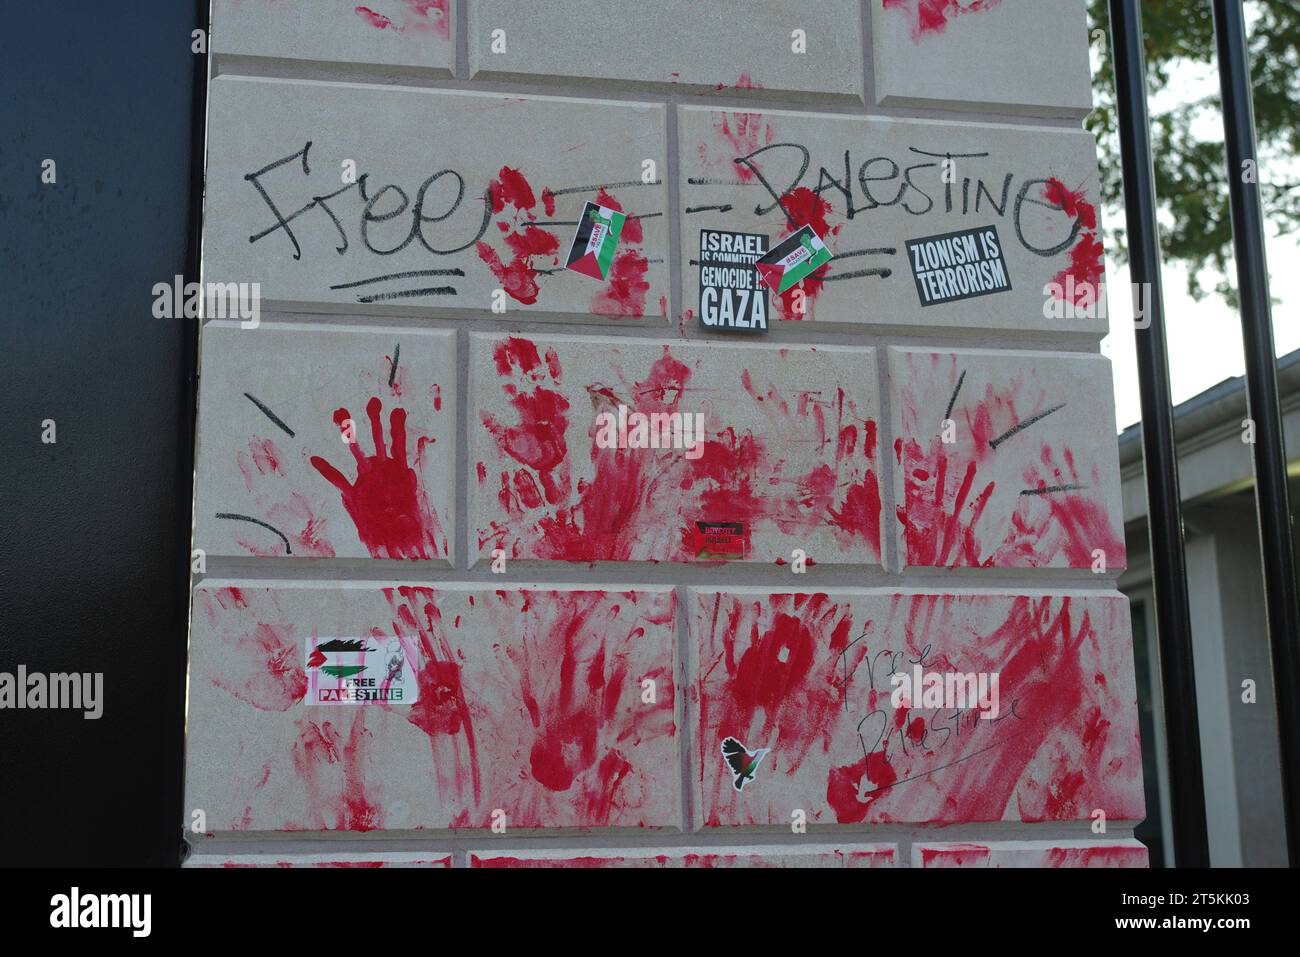 Impronte di mani di vernice rossa, adesivi di protesta e graffiti rimangono su un muro lungo un cancello della Casa Bianca il giorno dopo le proteste pro-palestinesi a Washington, DC. Foto Stock